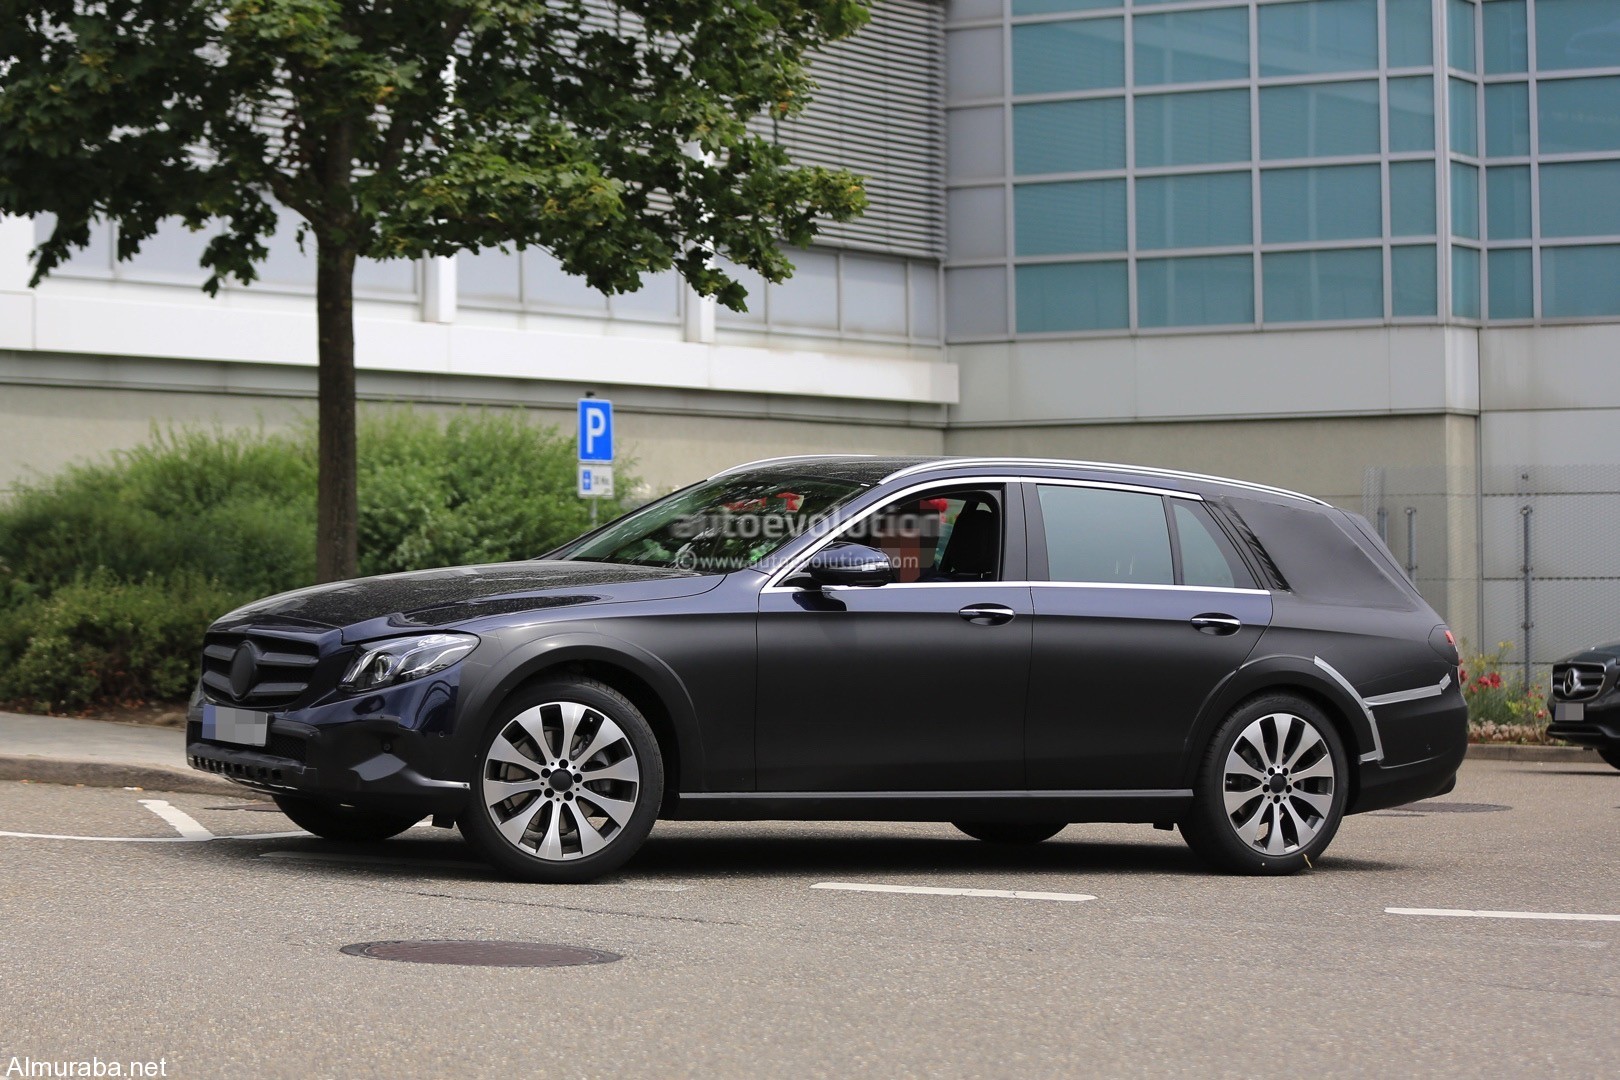 "فيديو وصور تجسسية" لمرسيدس بنز إي كلاس X213 المخصصة للطرق الوعرة Mercedes Benz 6